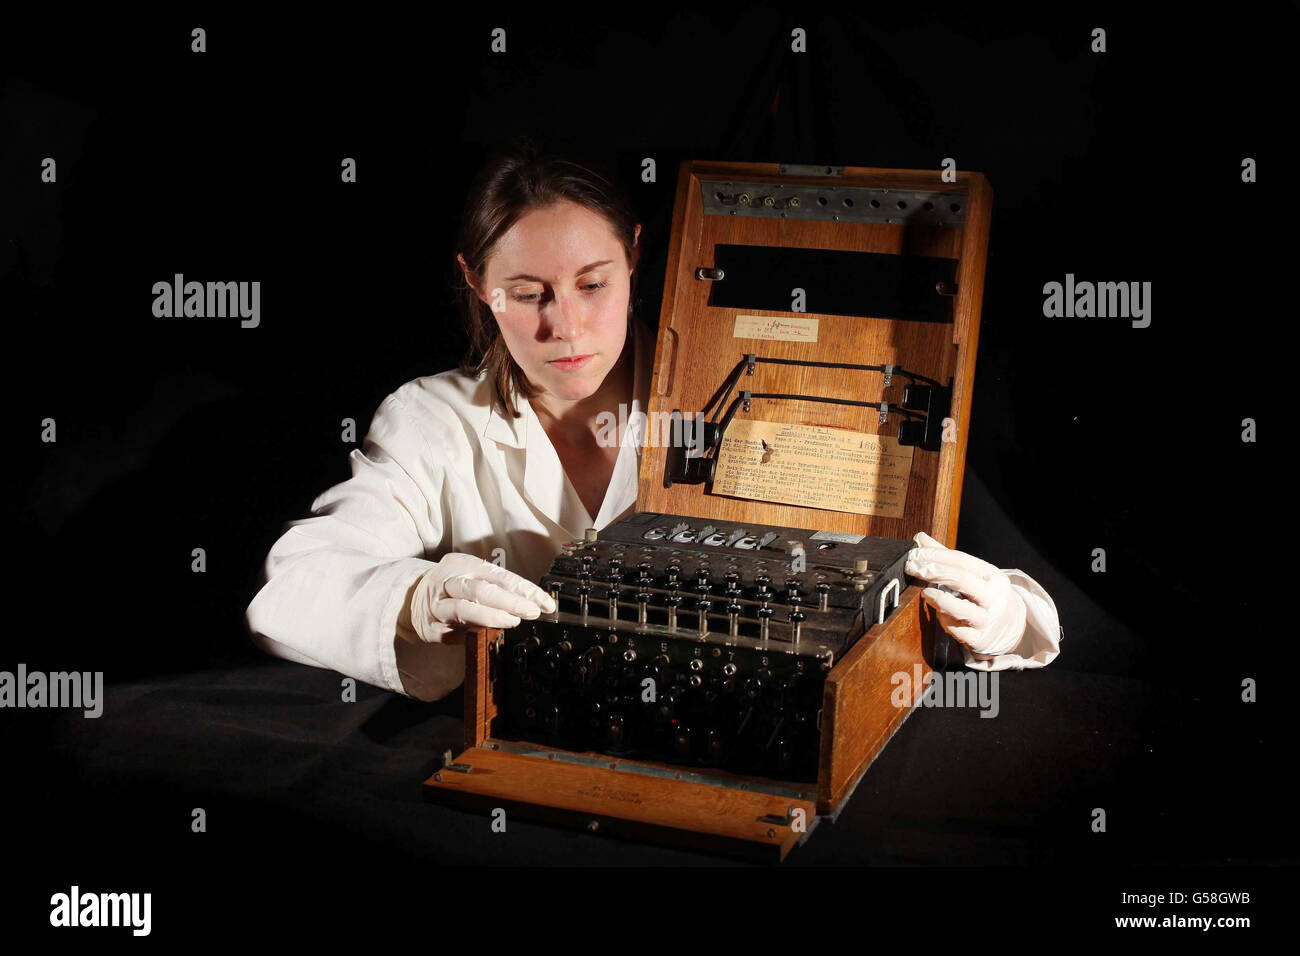 Der Konservator Bryony Finn des Science Museums inspiziert eine Enigma-Chiffriermaschine der 30er Jahre in einem Holzgehäuse von Sir Mick Jagger, das für Codebreaker ausgestellt wird: Alan Turing's Life and Legacy Ausstellung im Londoner Science Museum, die am Donnerstag, dem 21. Juni, eröffnet wird und ein Jahr lang zeitgleich mit dem 100. Geburtstag von Turing stattfindet. Stockfoto